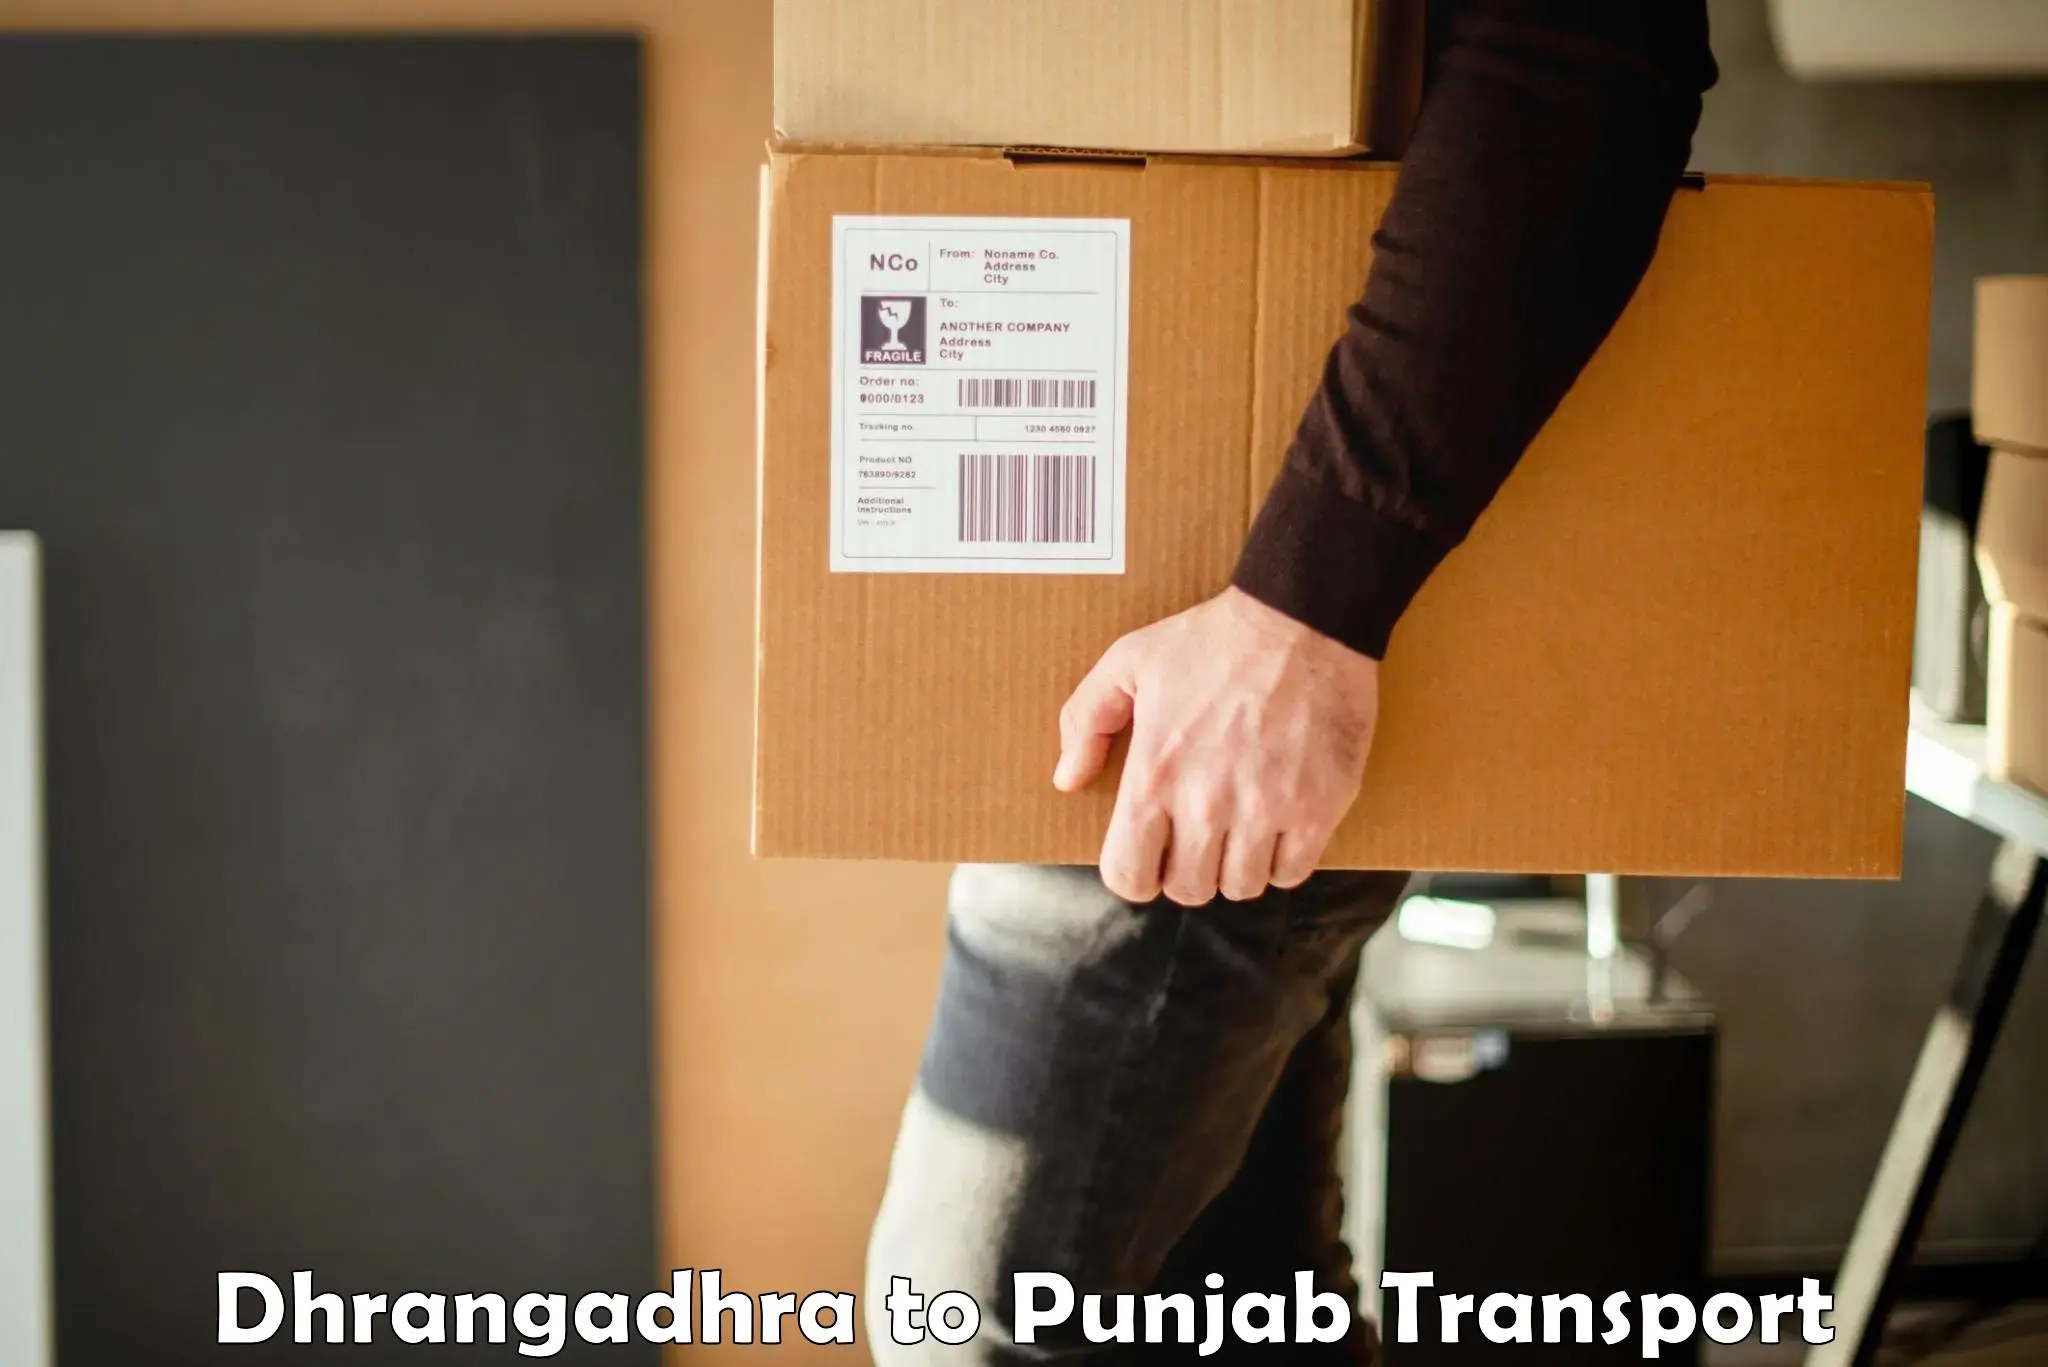 Furniture transport service Dhrangadhra to Dinanagar